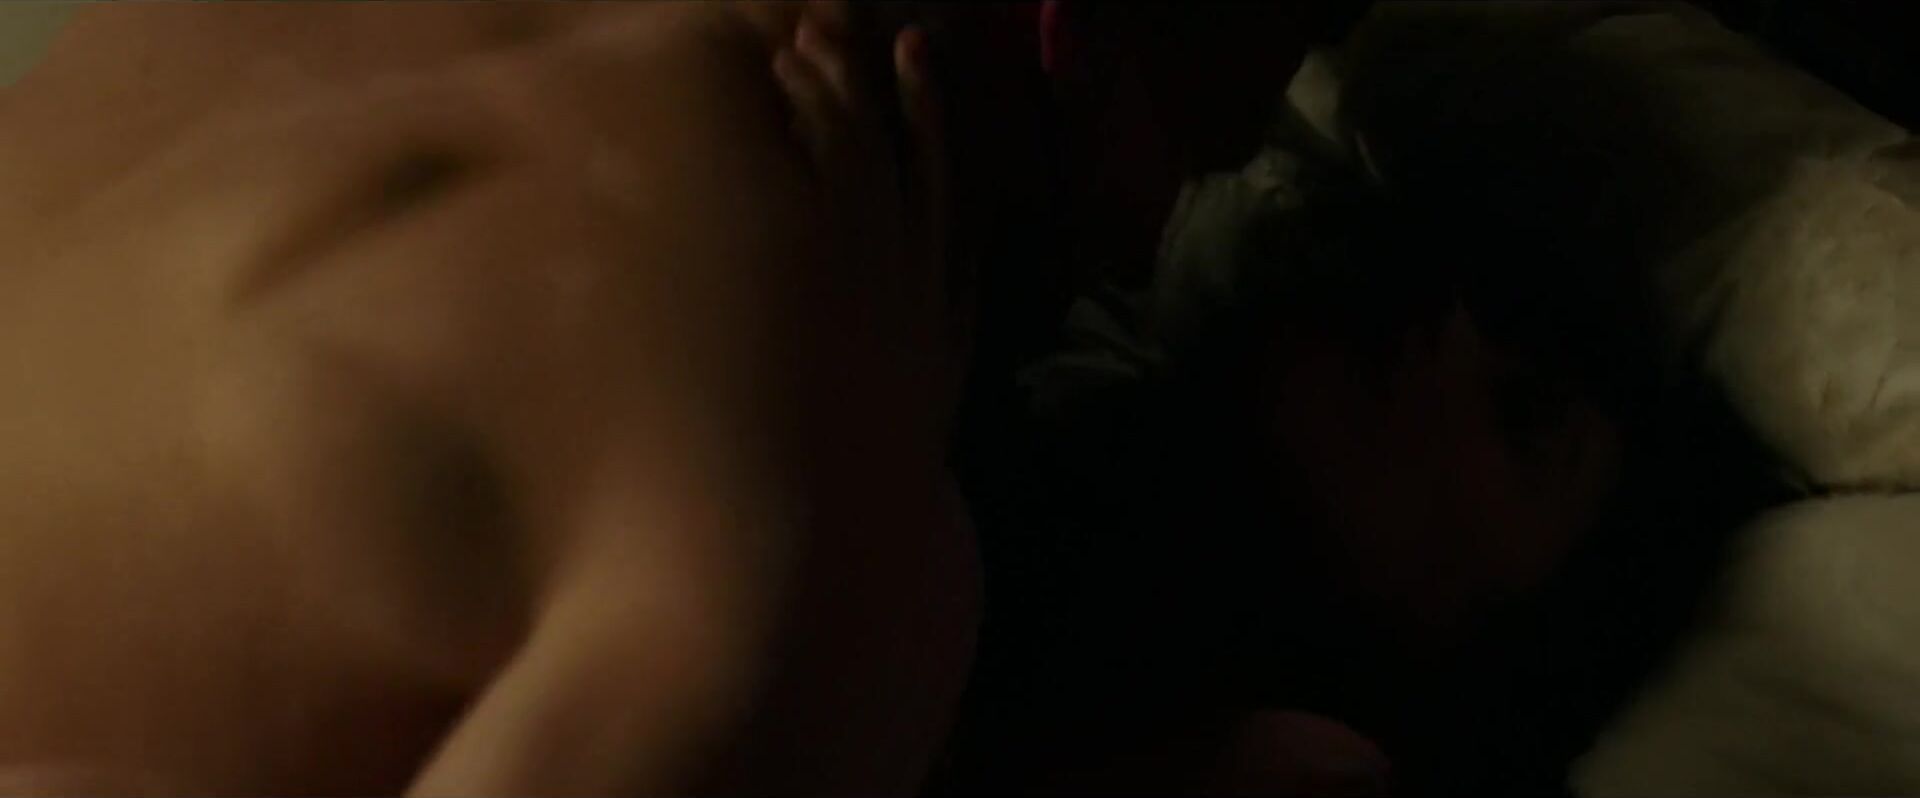 Gay Pov Celebs video from erotic drama movie Fifty Shades Darker where MILF gets fucked hard Teenporno